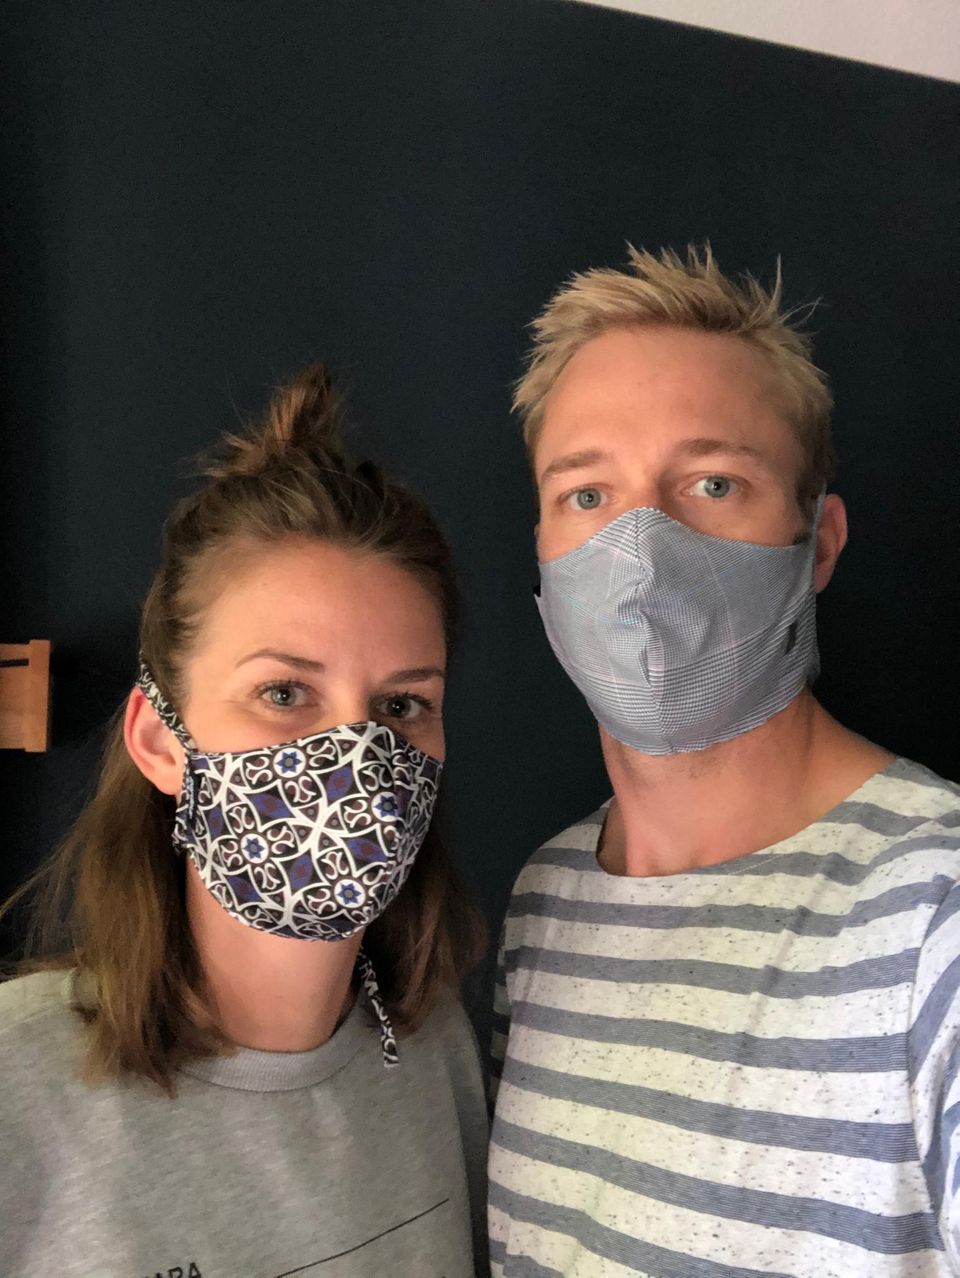 "Ein Schutz fürs Leben": Mann und Frau mit Masken